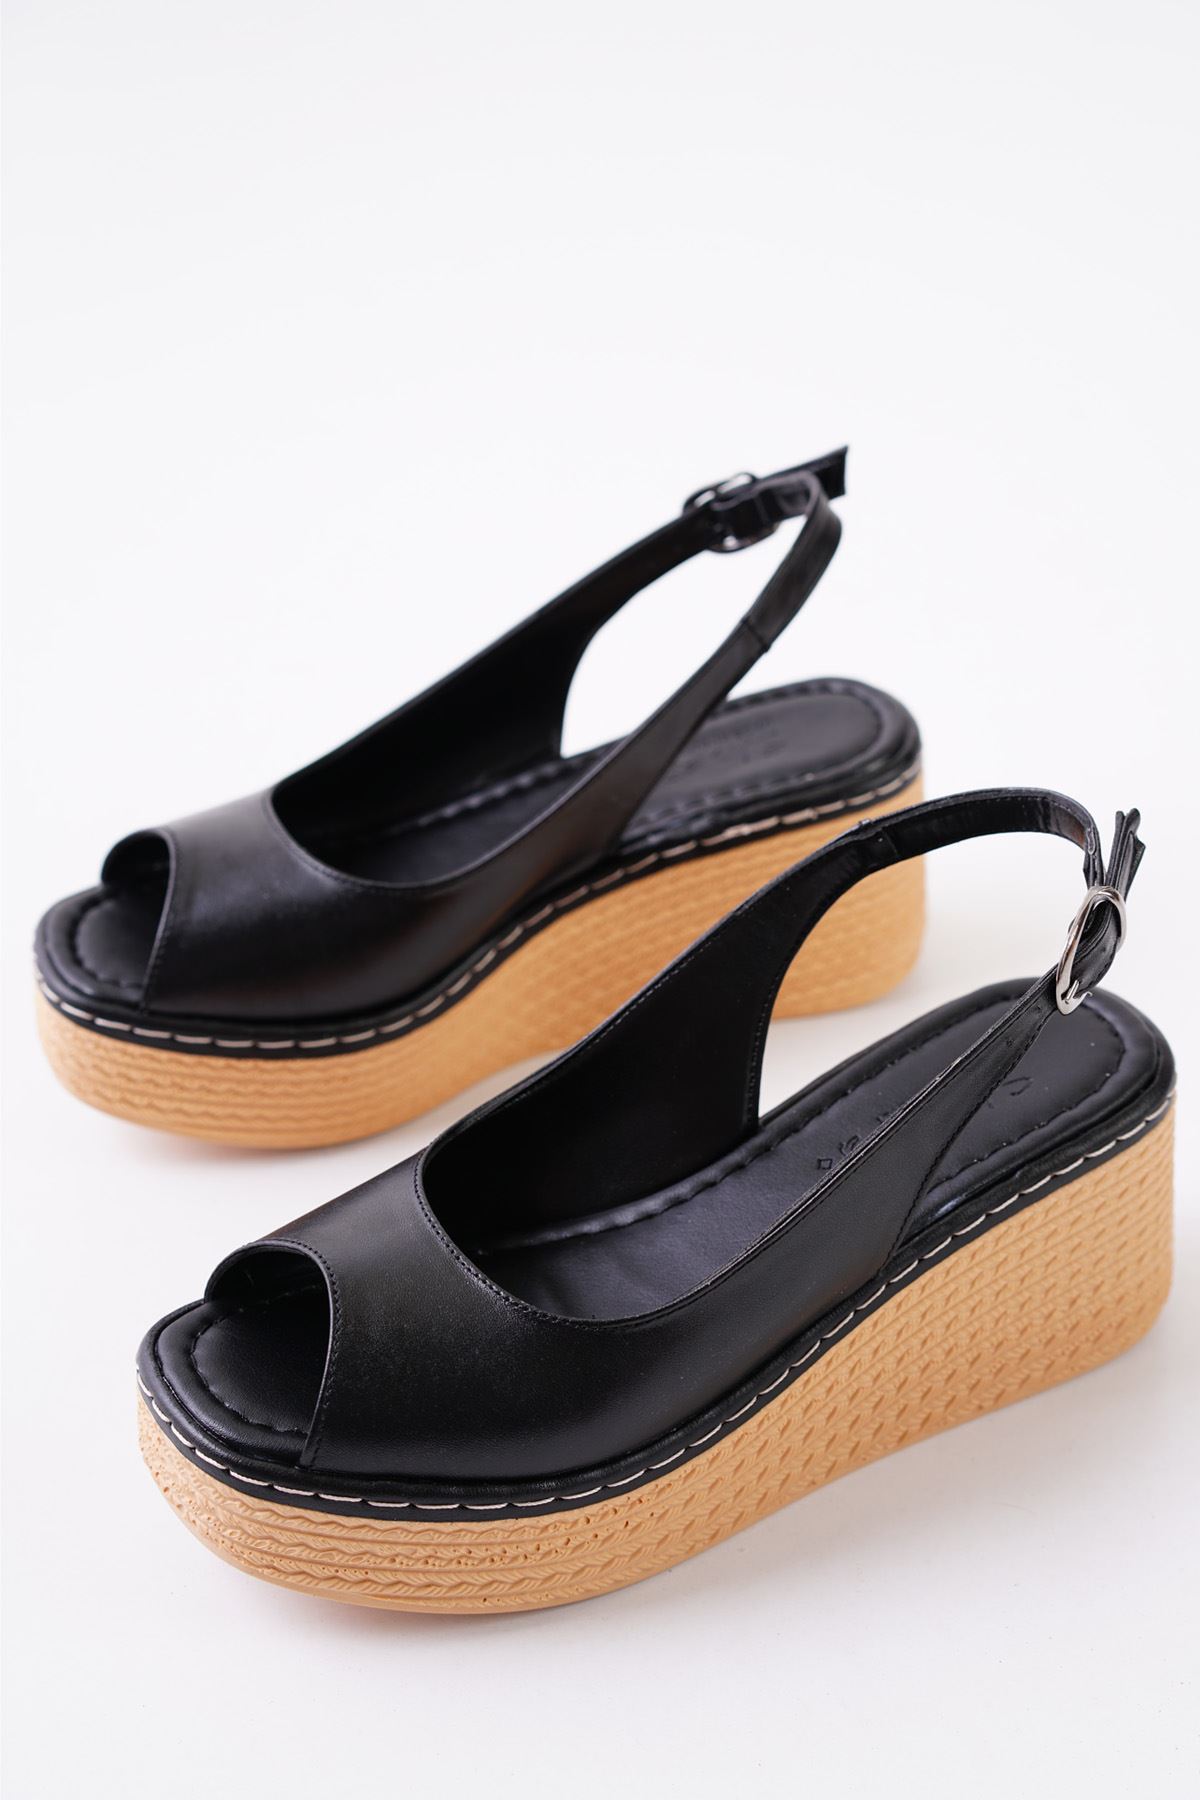 Bally Siyah Dolgu Topuklu Kadın Ayakkabı